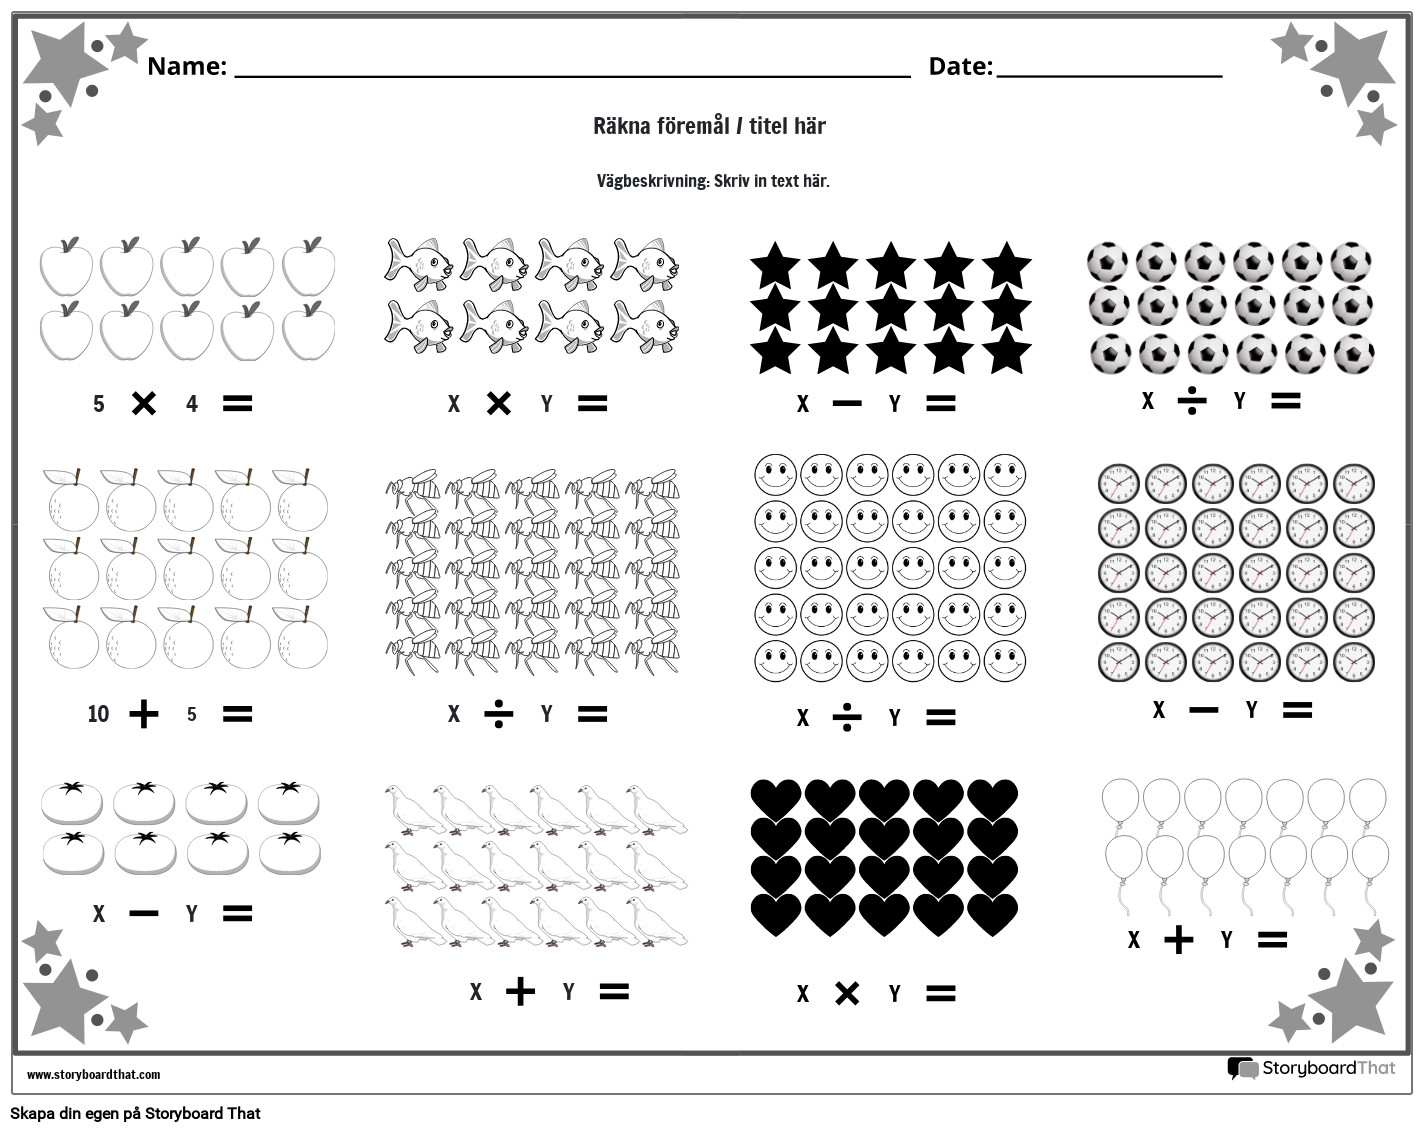 Kalkylblad för blandad drift med objekt (svart och vitt)